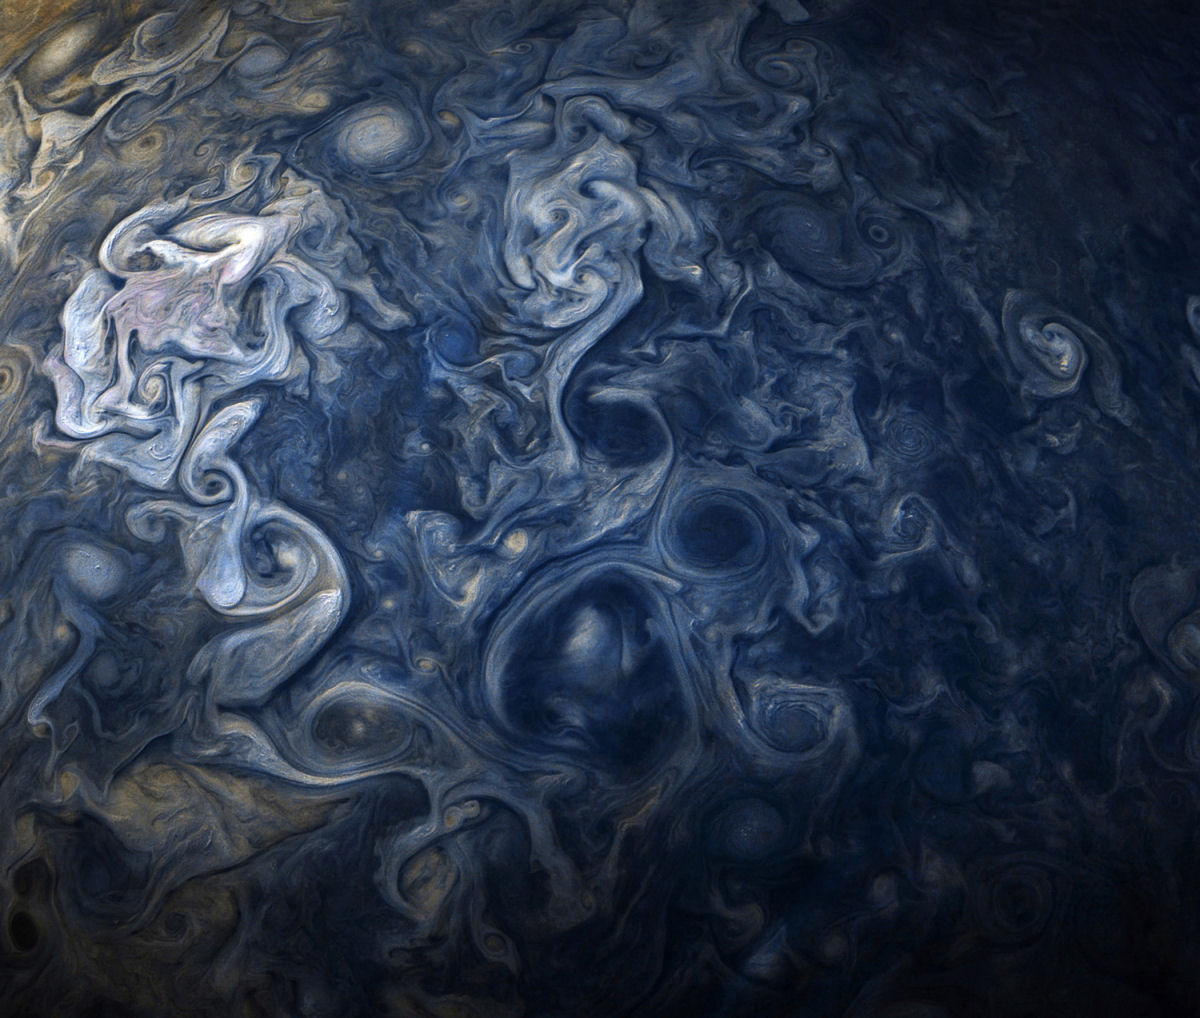 Imagens de close-up de Jpiter revelam uma paisagem impressionista de gases turbulentos 01